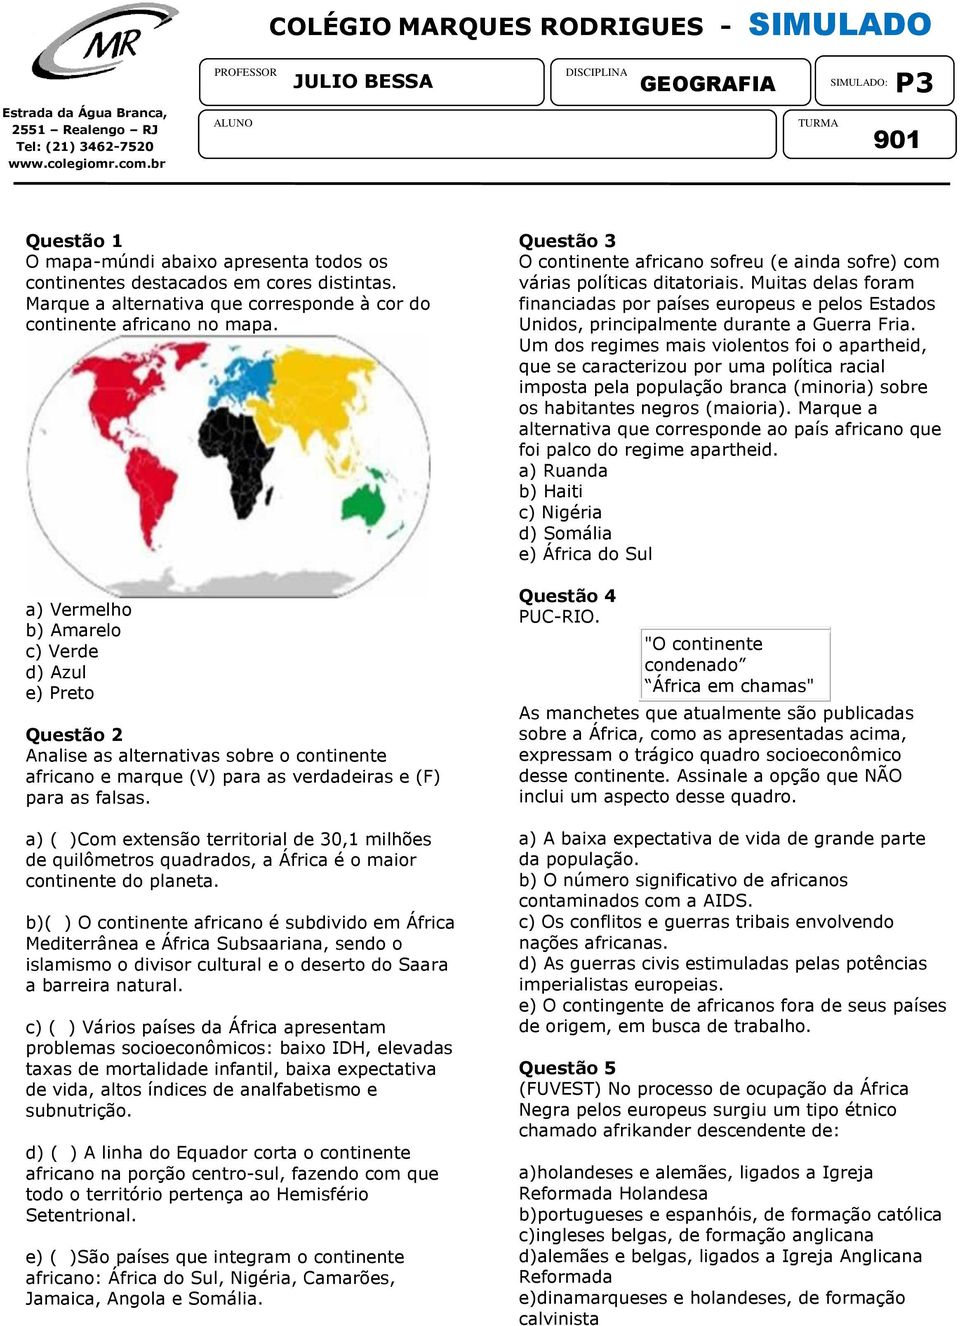 a) Vermelho b) Amarelo c) Verde d) Azul e) Preto Questão 2 Analise as alternativas sobre o continente africano e marque (V) para as verdadeiras e (F) para as falsas.